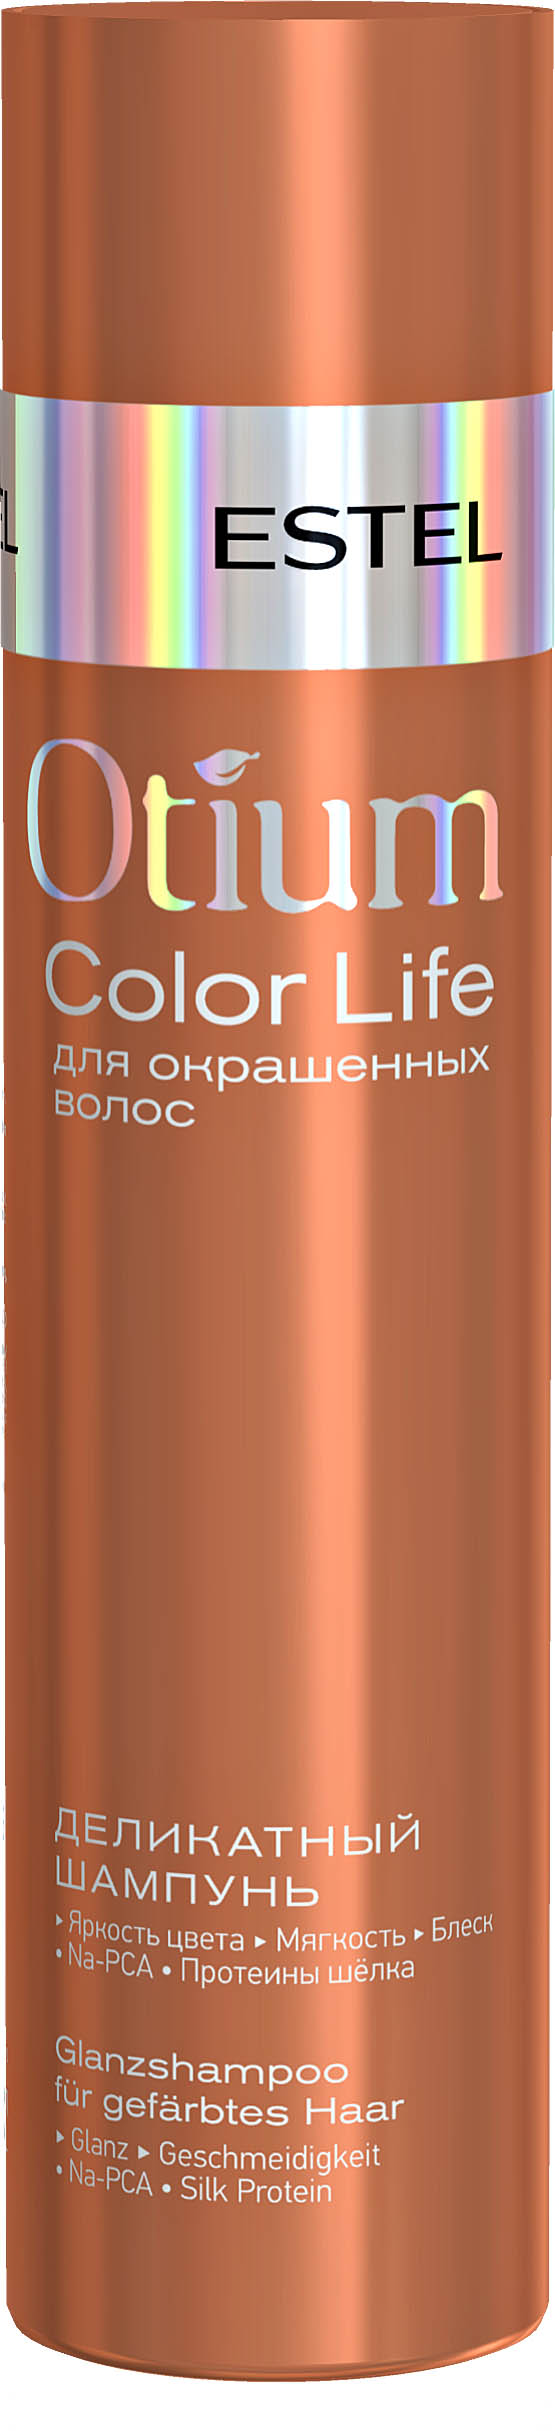 Шампунь деликатный для окрашенных волос OTIUM COLOR LIFE, 250 мл